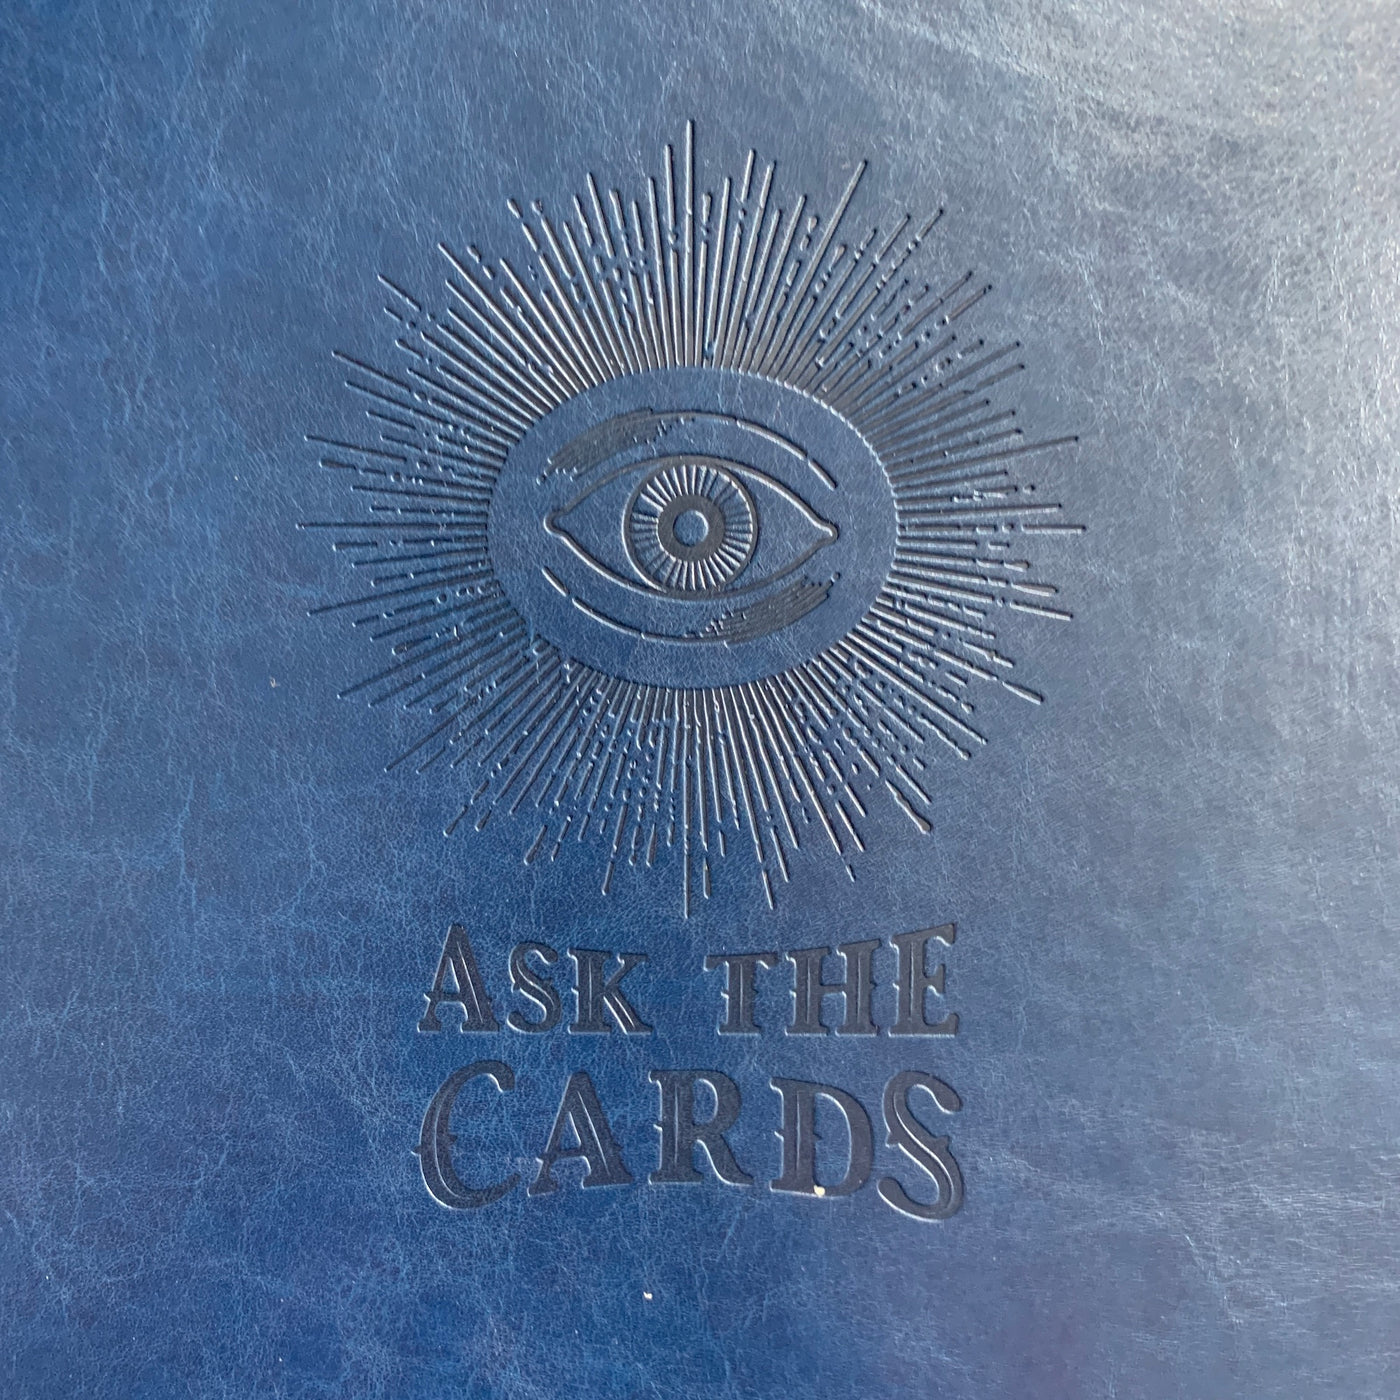 Ask the Cards Tarot Journal